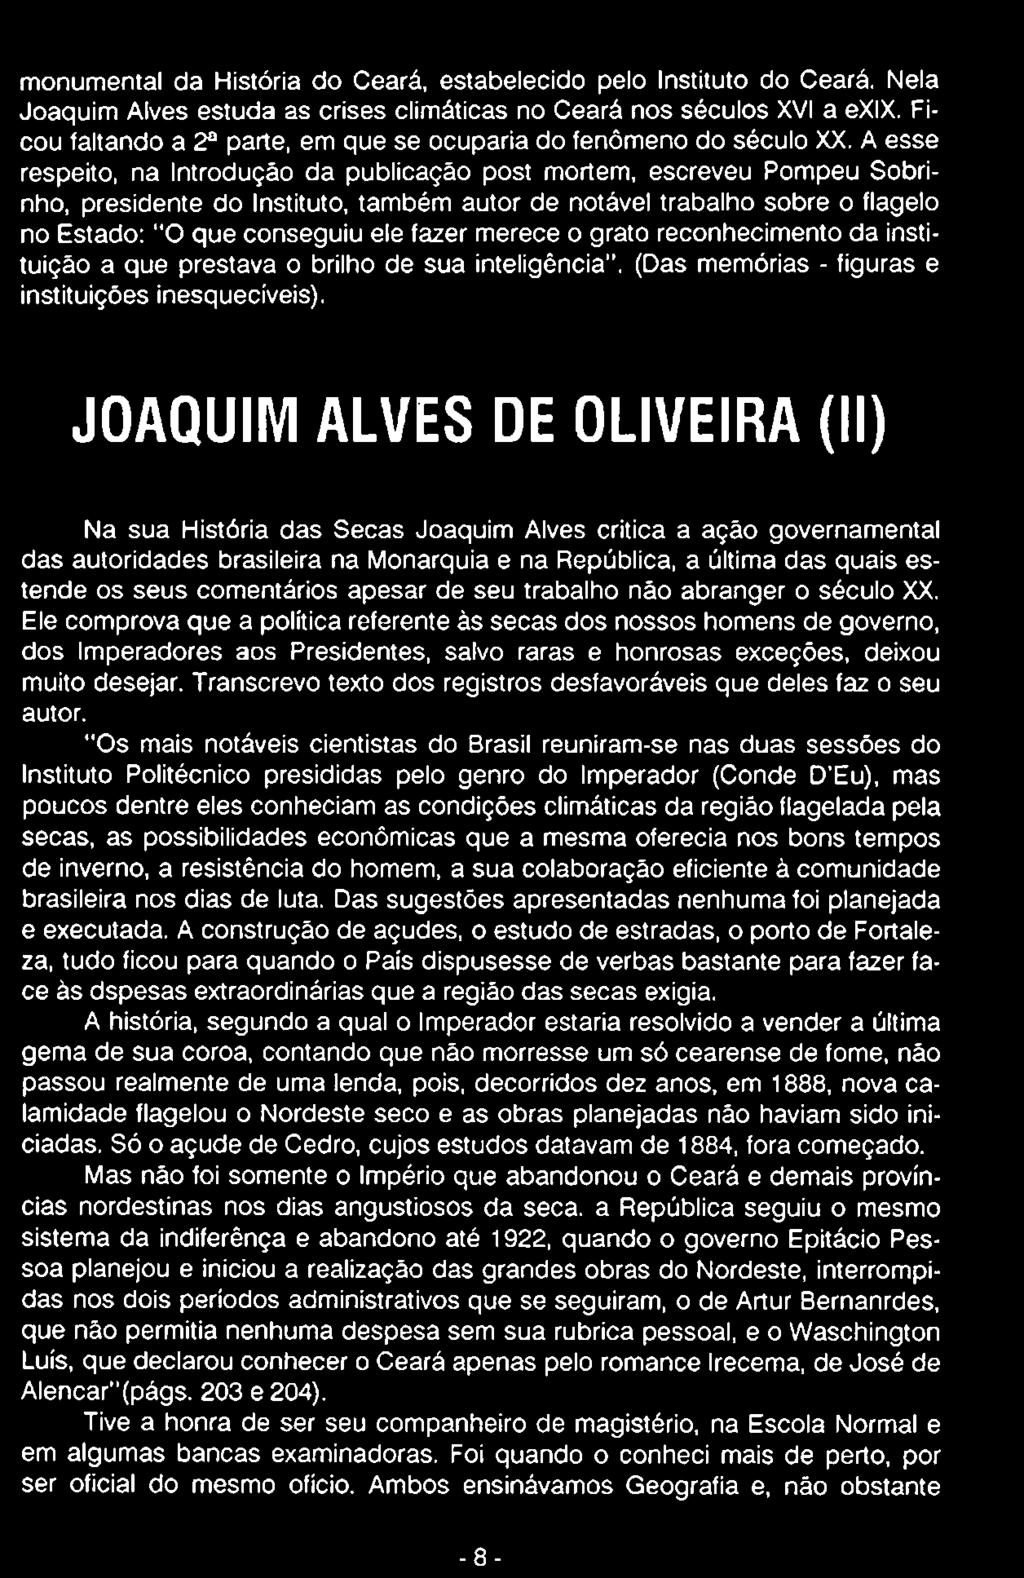 JOAQUIM ALVES DE OLIVEIRA (II) Na sua História das Secas Joaquim Alves critica a ação governamental das autoridades brasileira na Monarquia e na República, a última das quais estende os seus